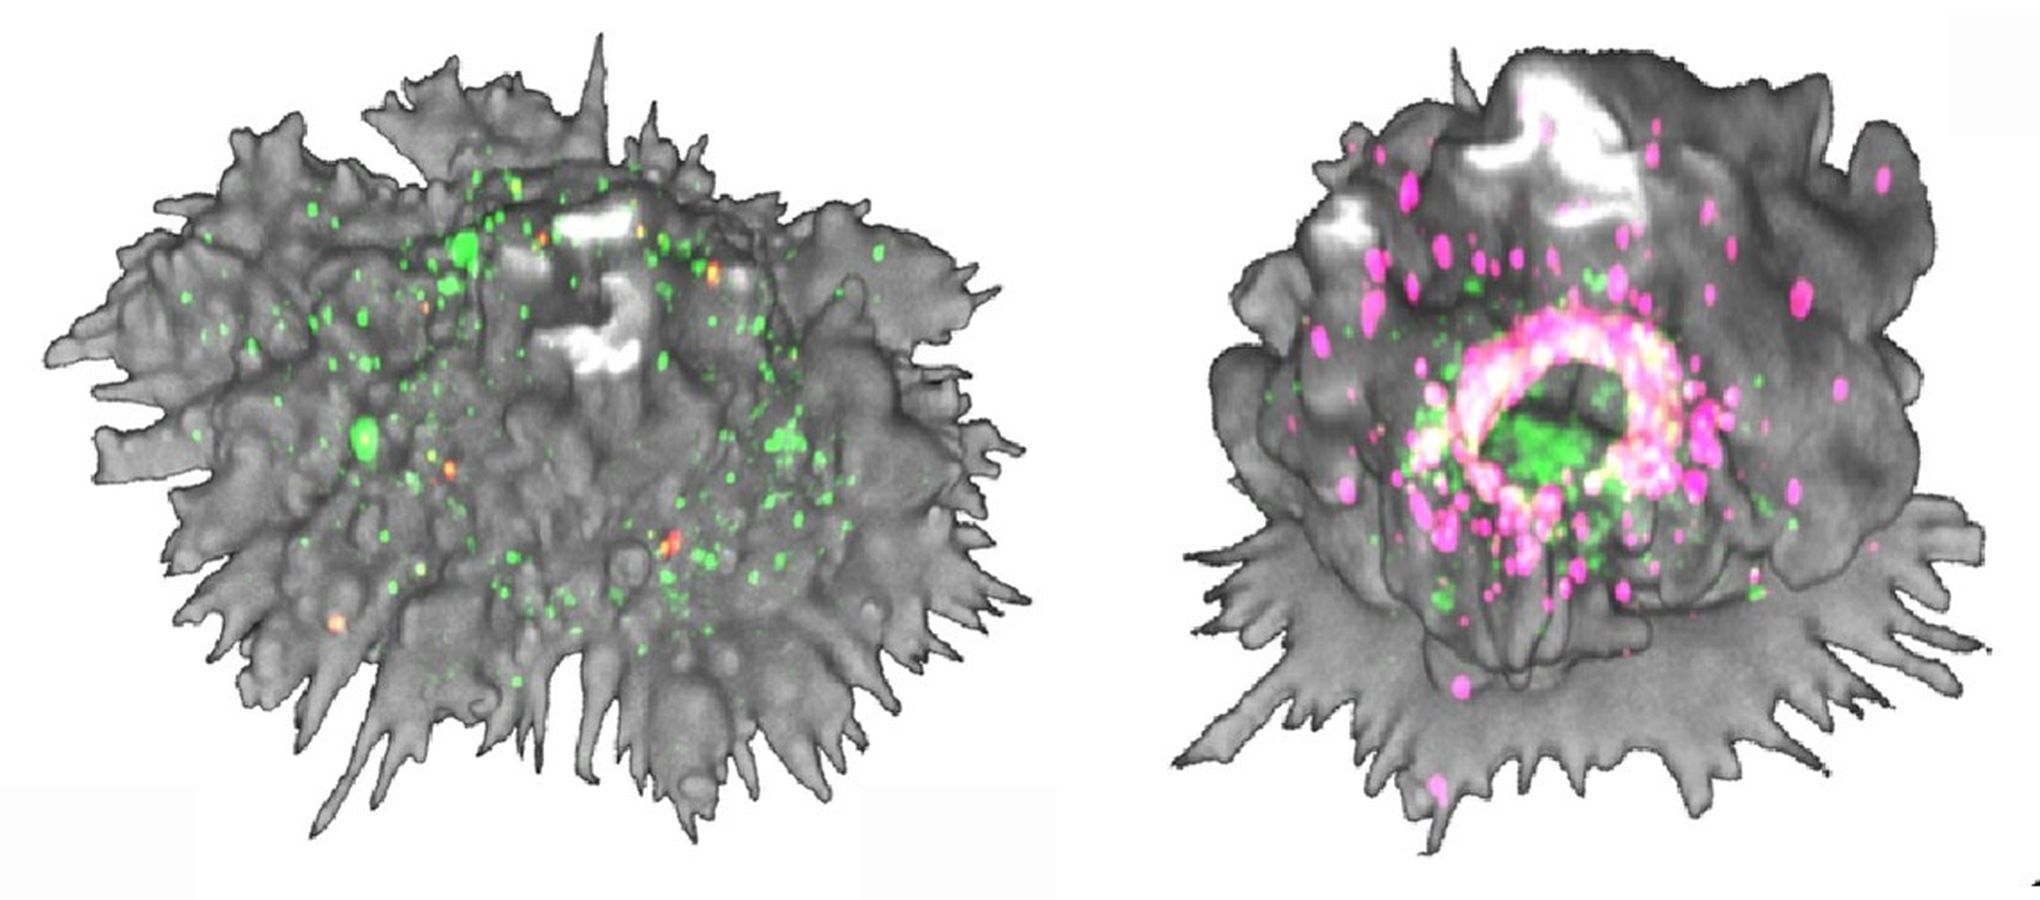 Célula dendrítica madura y transformación masiva de la morfología de la célula dendrítica 60 min después de la captación del VIH